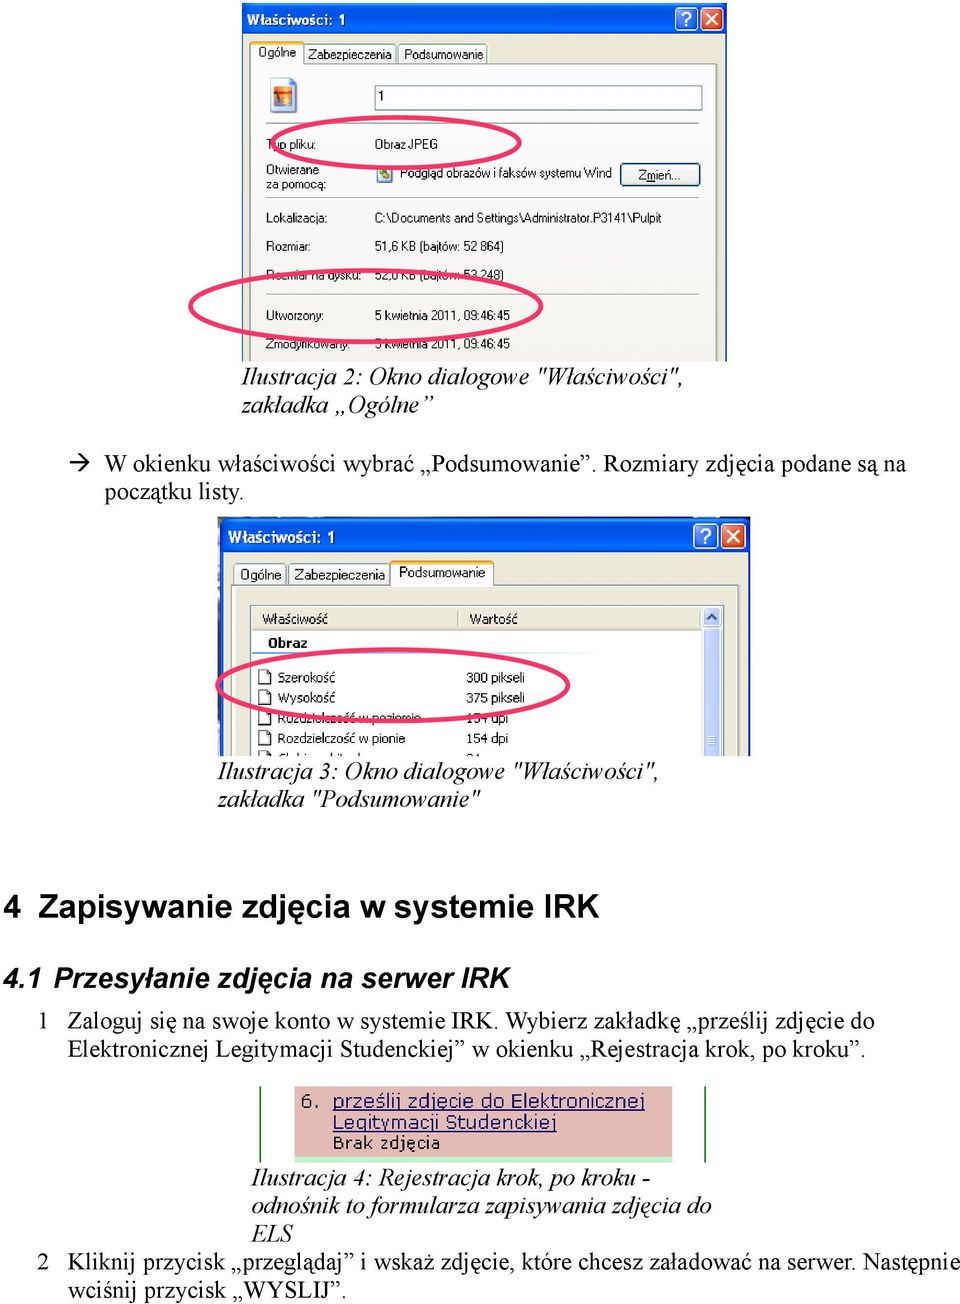 1 Przesyłanie zdjęcia na serwer IRK 1 Zaloguj się na swoje konto w systemie IRK.